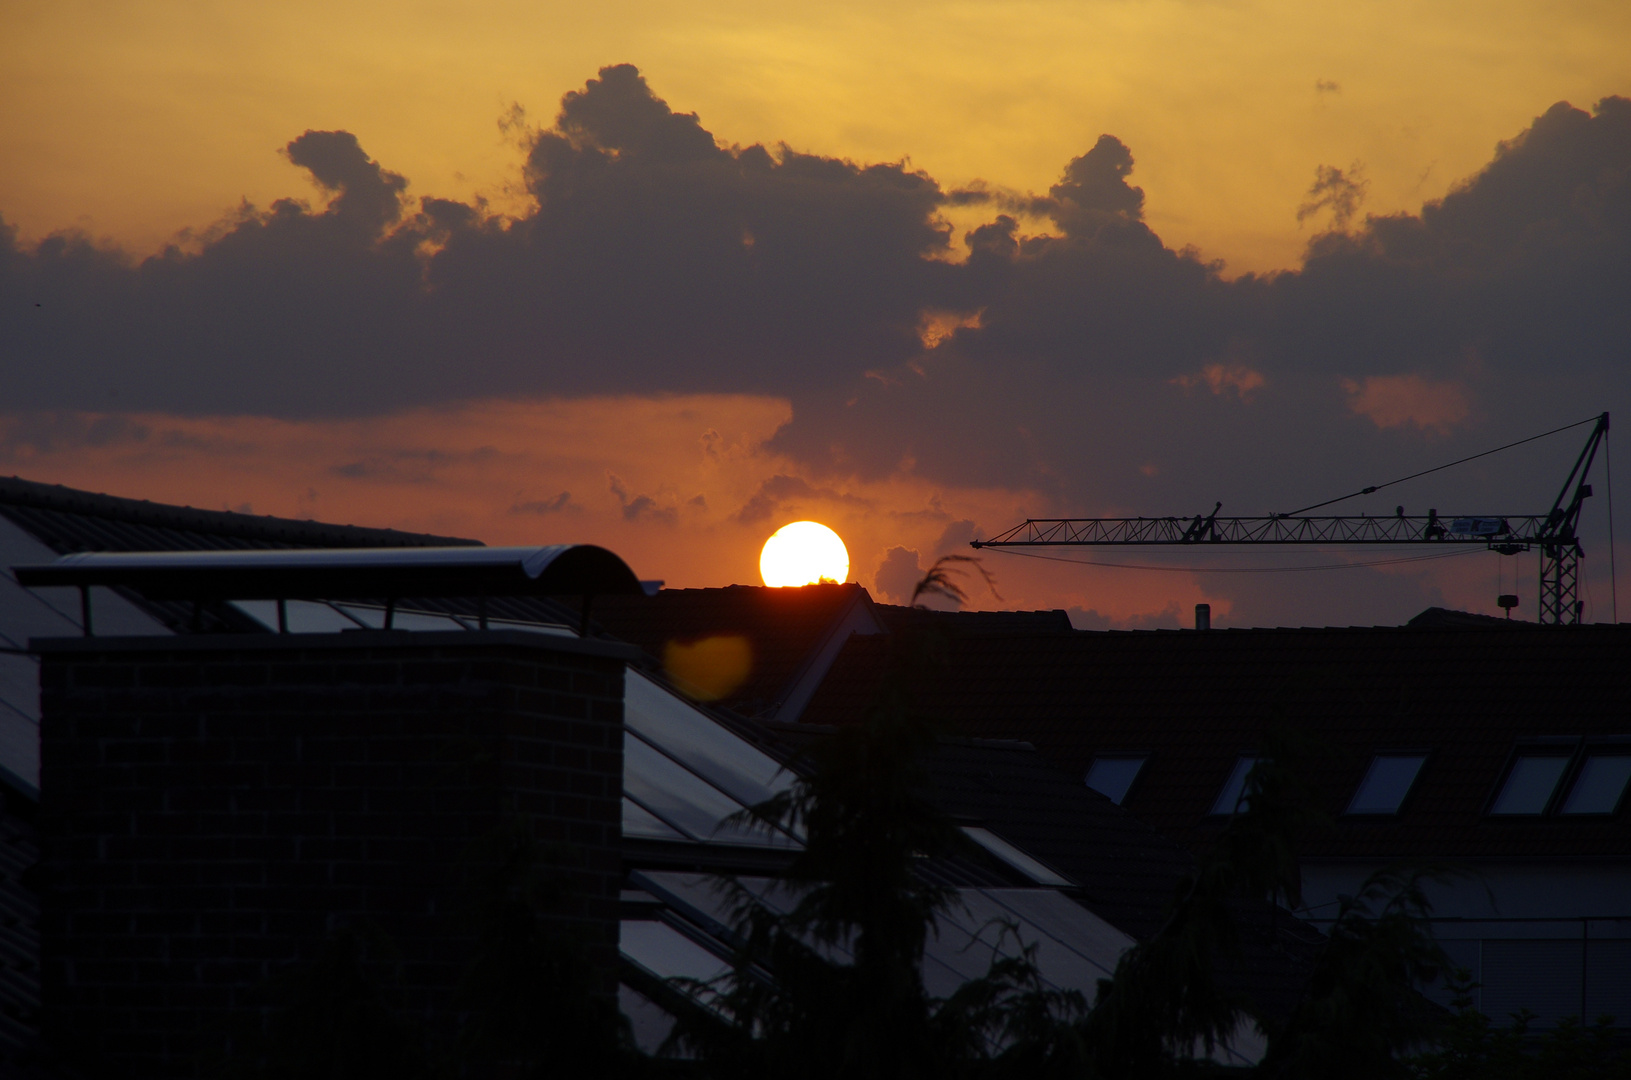 Sonnenaufgang heute 5 Uhr 23 in Pleidelsheim,(P) Sonnenuntergang 21 Uhr 30